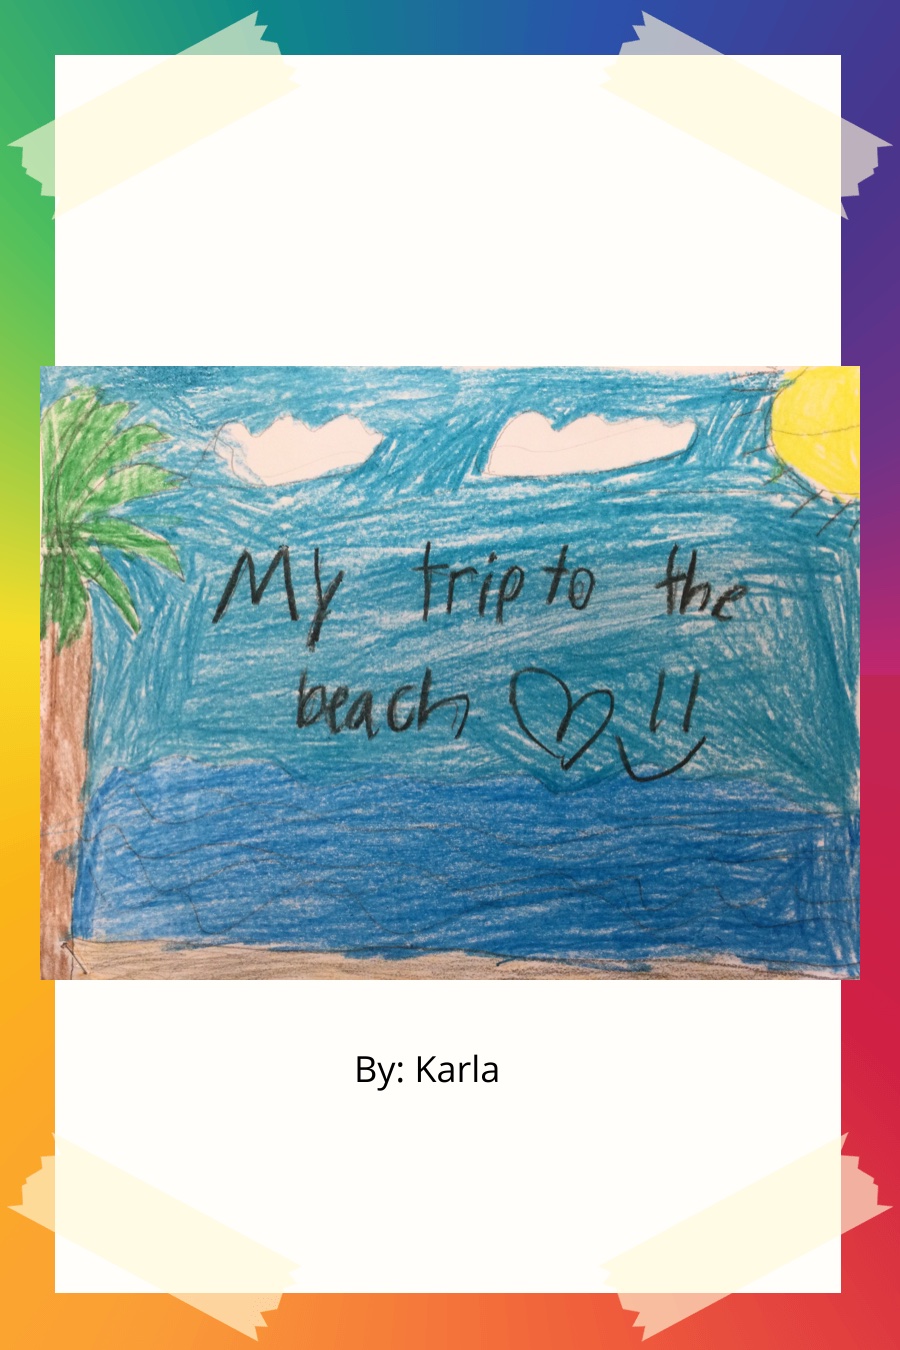 My Trip to the Beach by Karla E